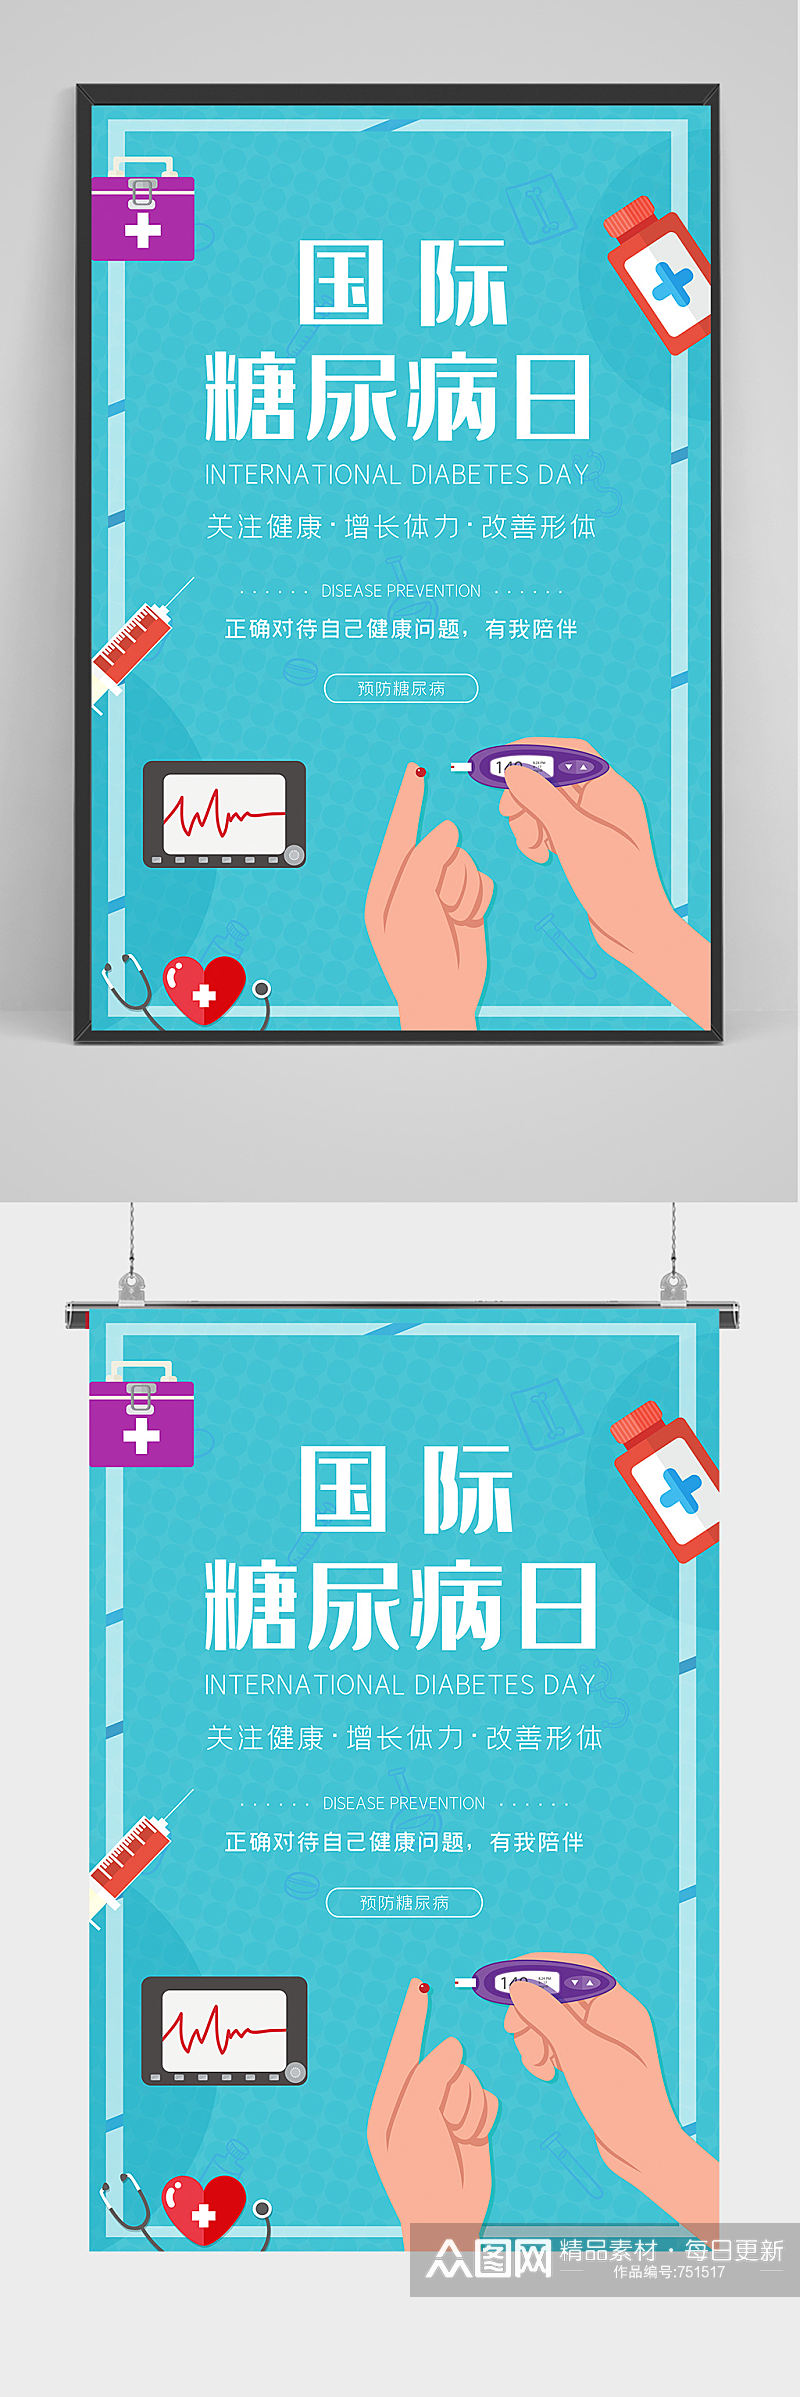 蓝色国际糖尿病日海报设计素材